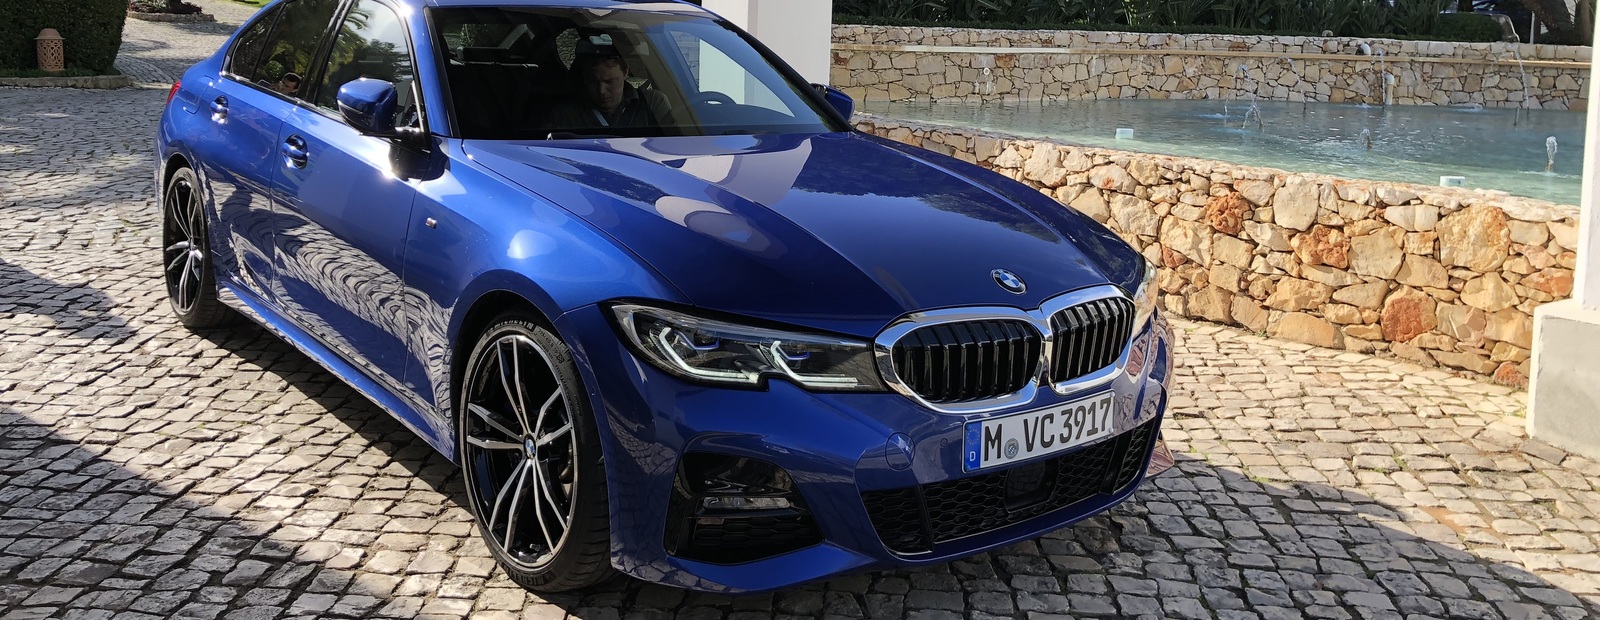 Первый обзор и тест-драйв новейшего BMW 3 Серии G20 (видео)